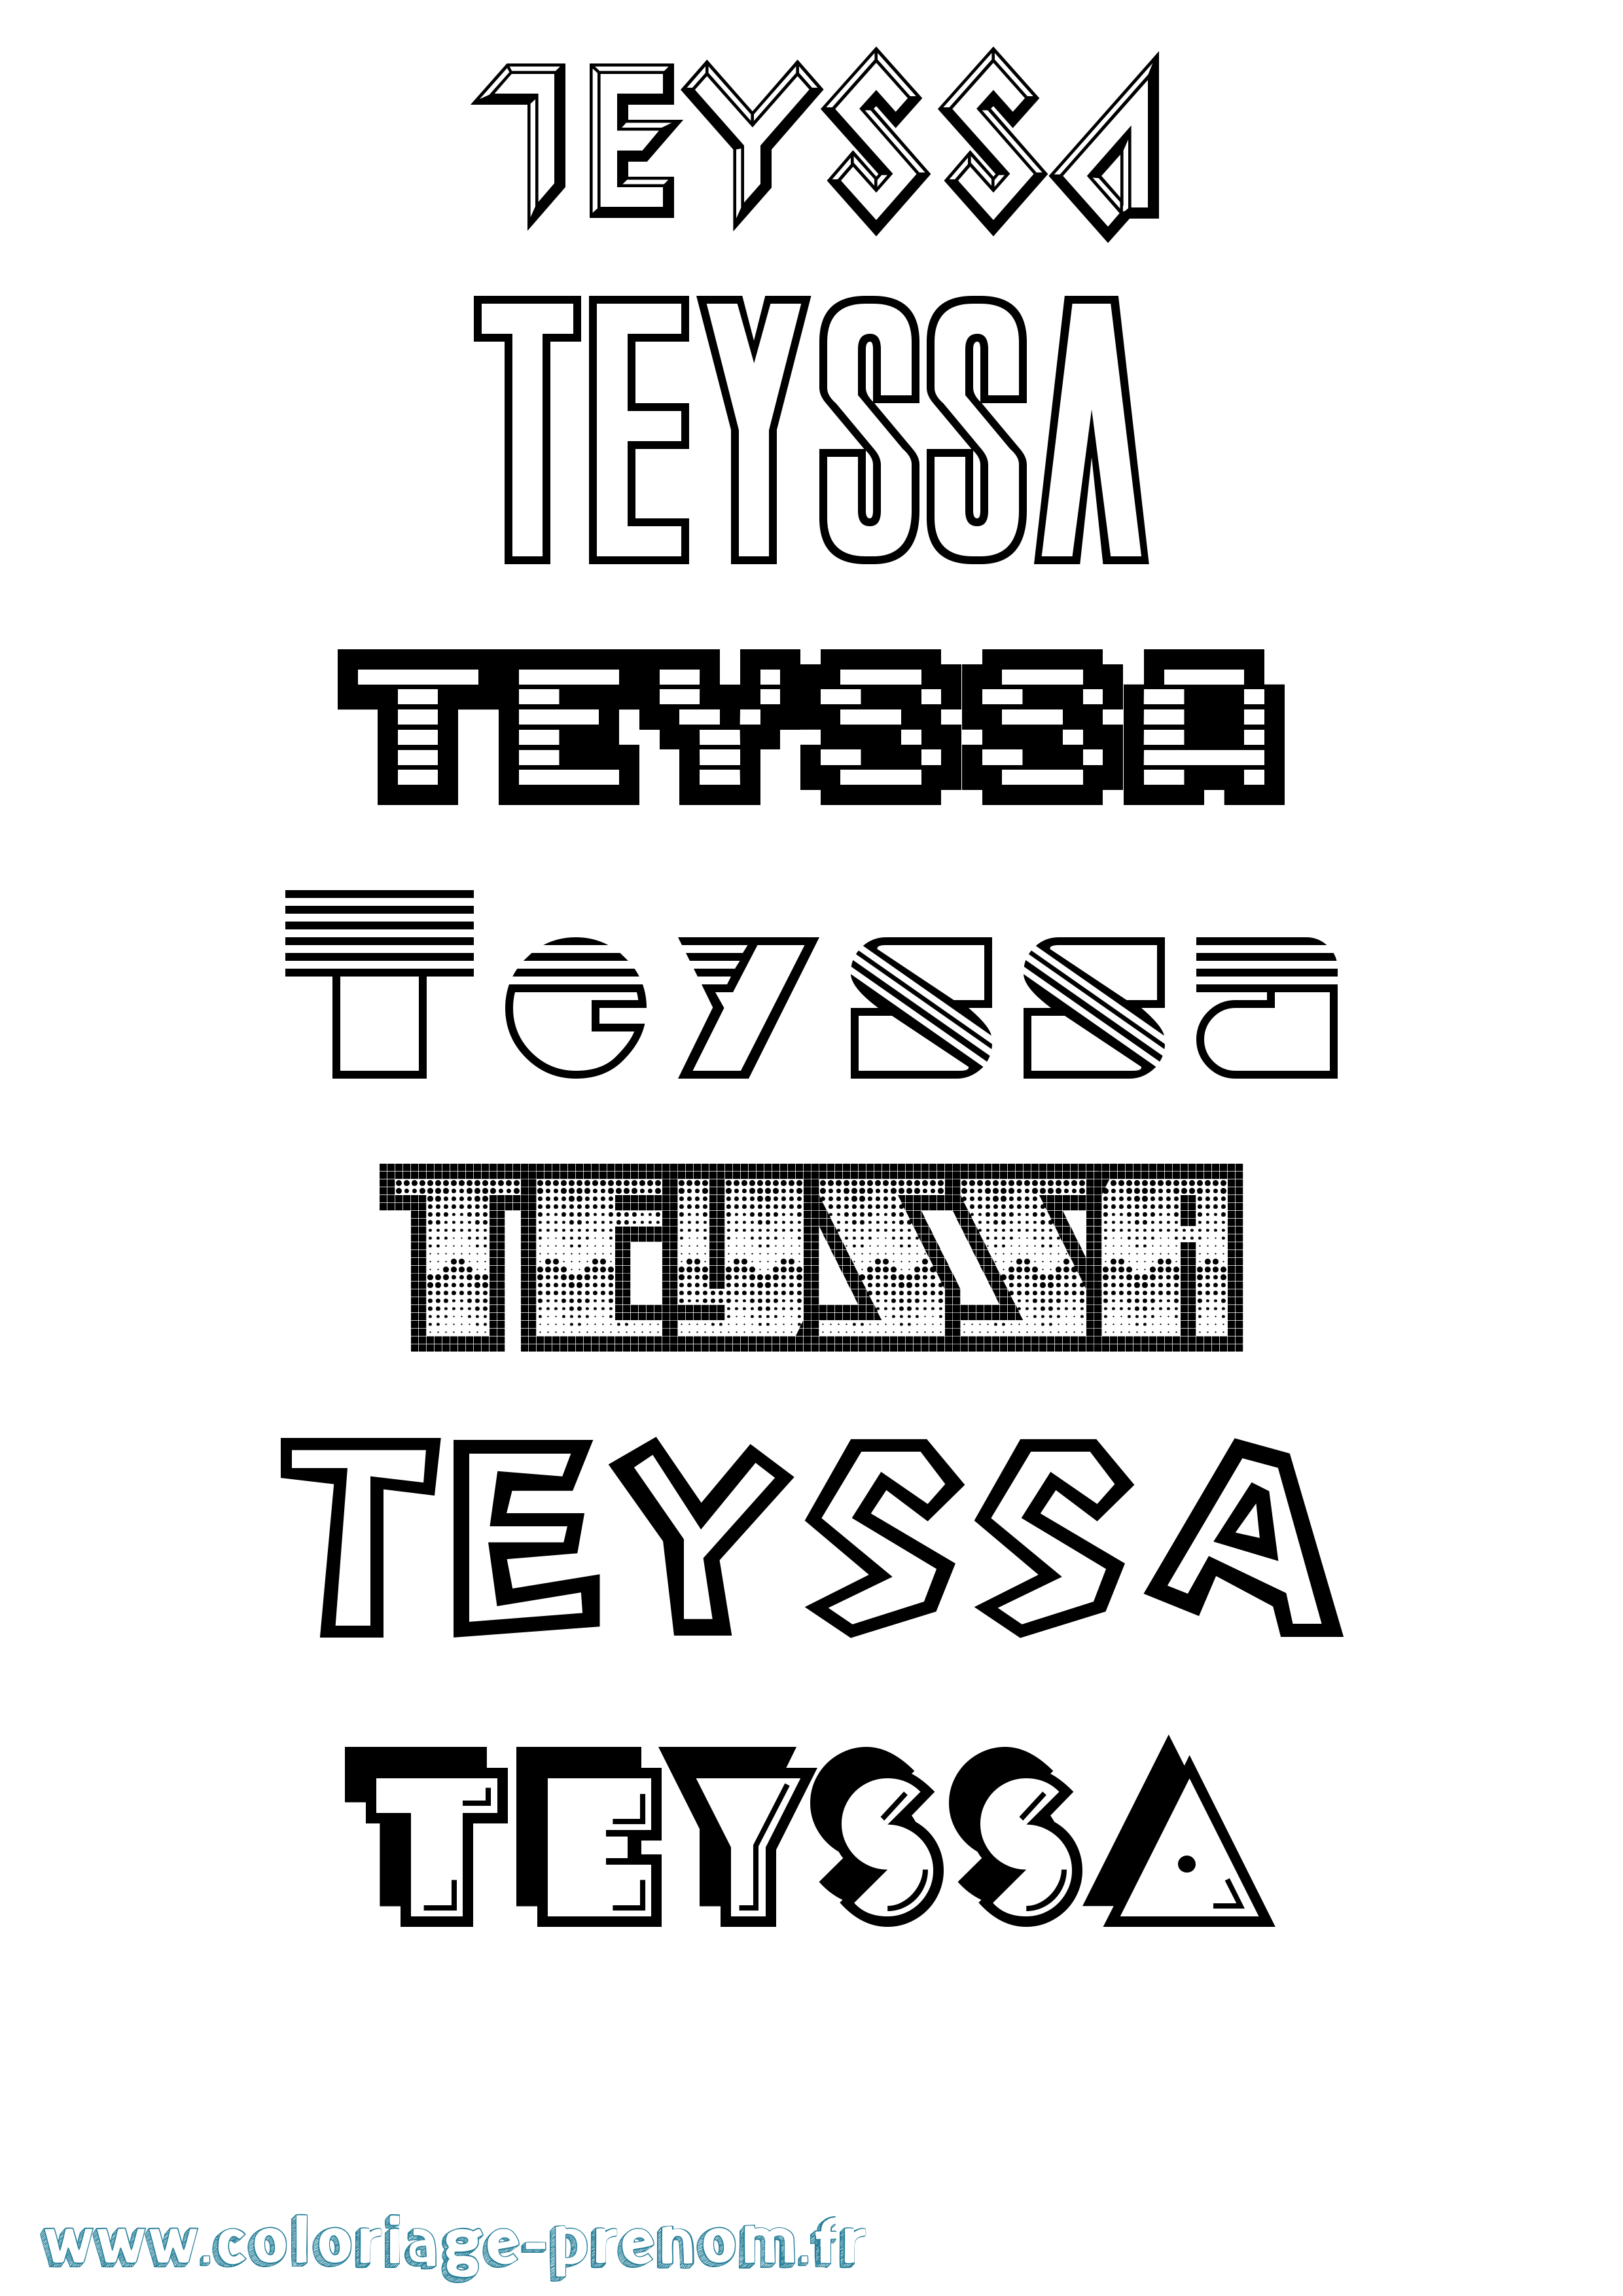 Coloriage prénom Teyssa Jeux Vidéos